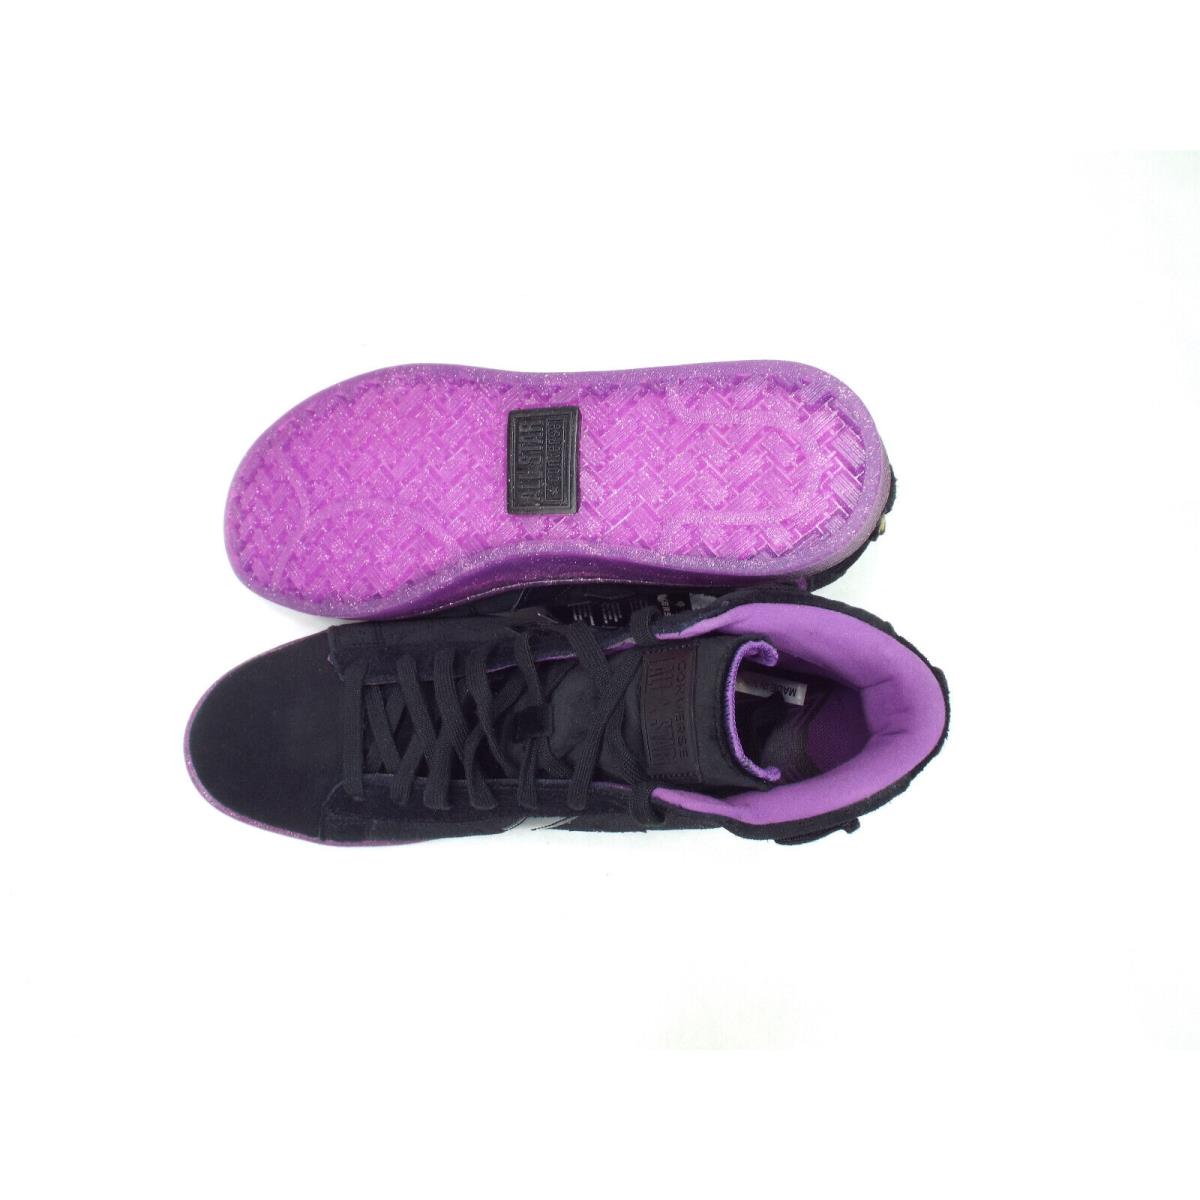 Converse shoes Pro Leather - Black & Amaranth 3